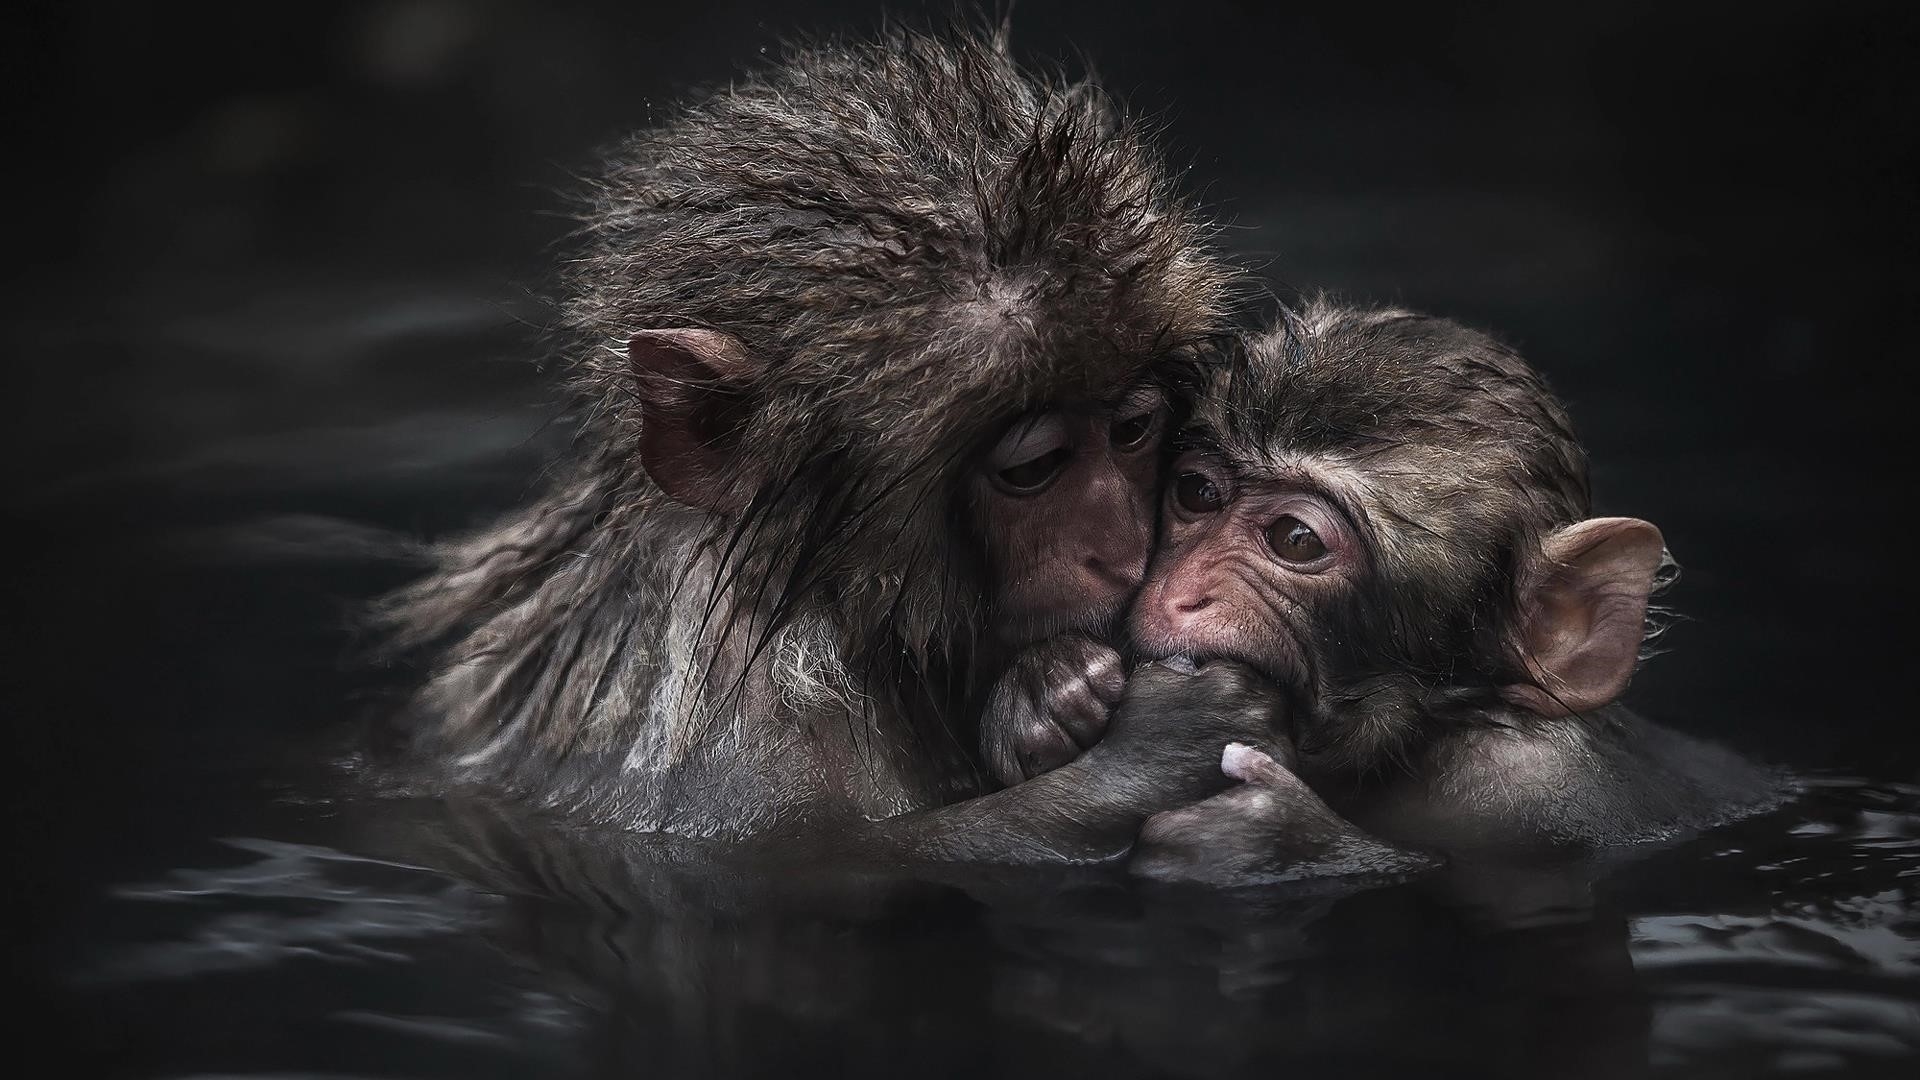 Две обезьяны находятся на водоеме в крупным планом фотографии животных обои скачать